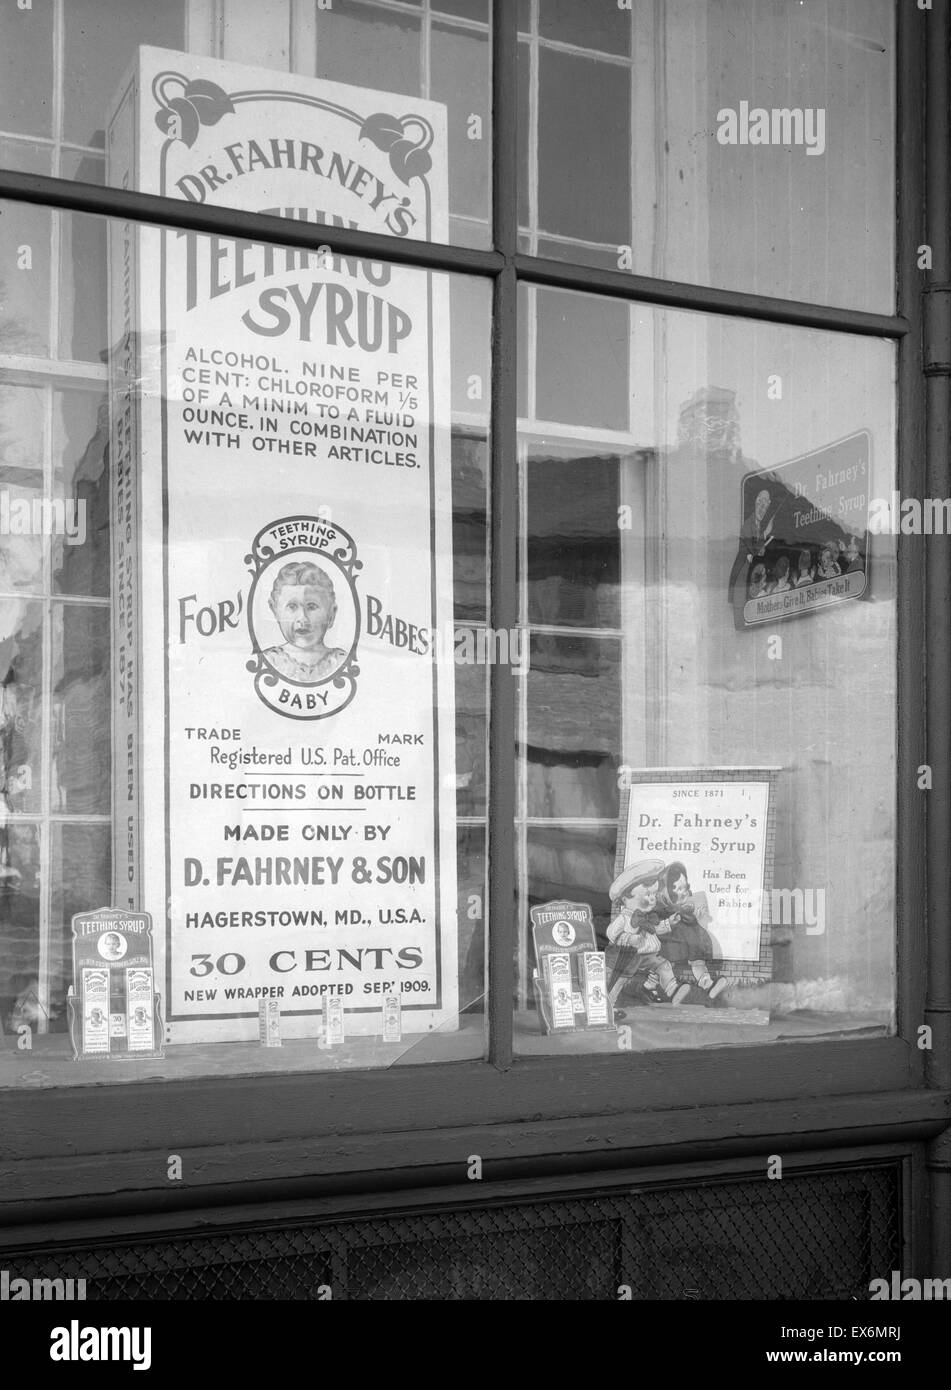 Boutique des médicaments. Hagerstown, Maryland, 1937. Par Arthur Rothstein, 1915-1985 Banque D'Images